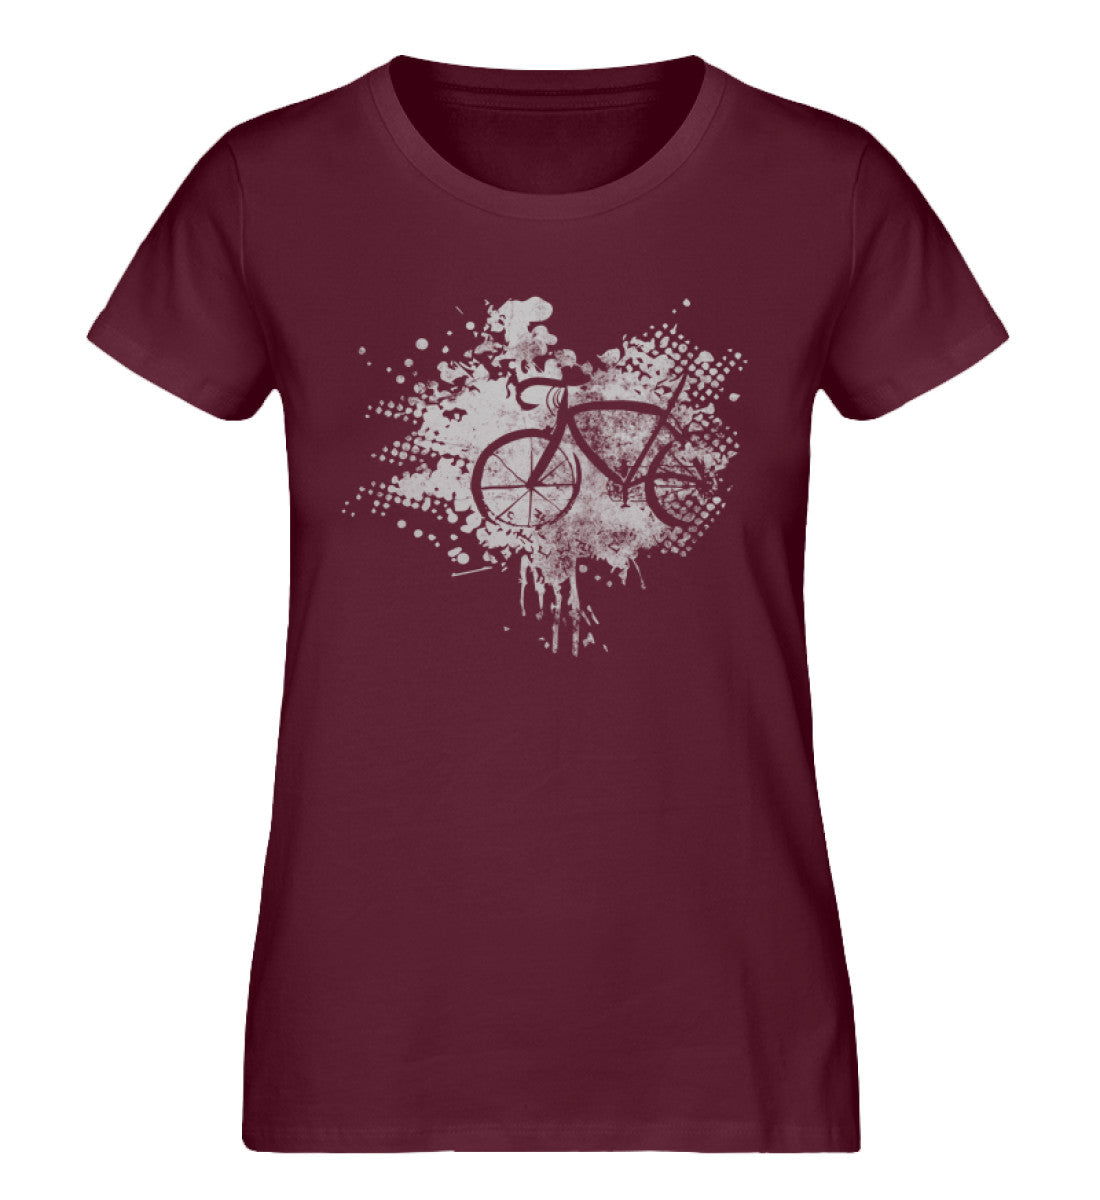 Fahrrad - Abstrakt - Damen Organic T-Shirt fahrrad Weinrot